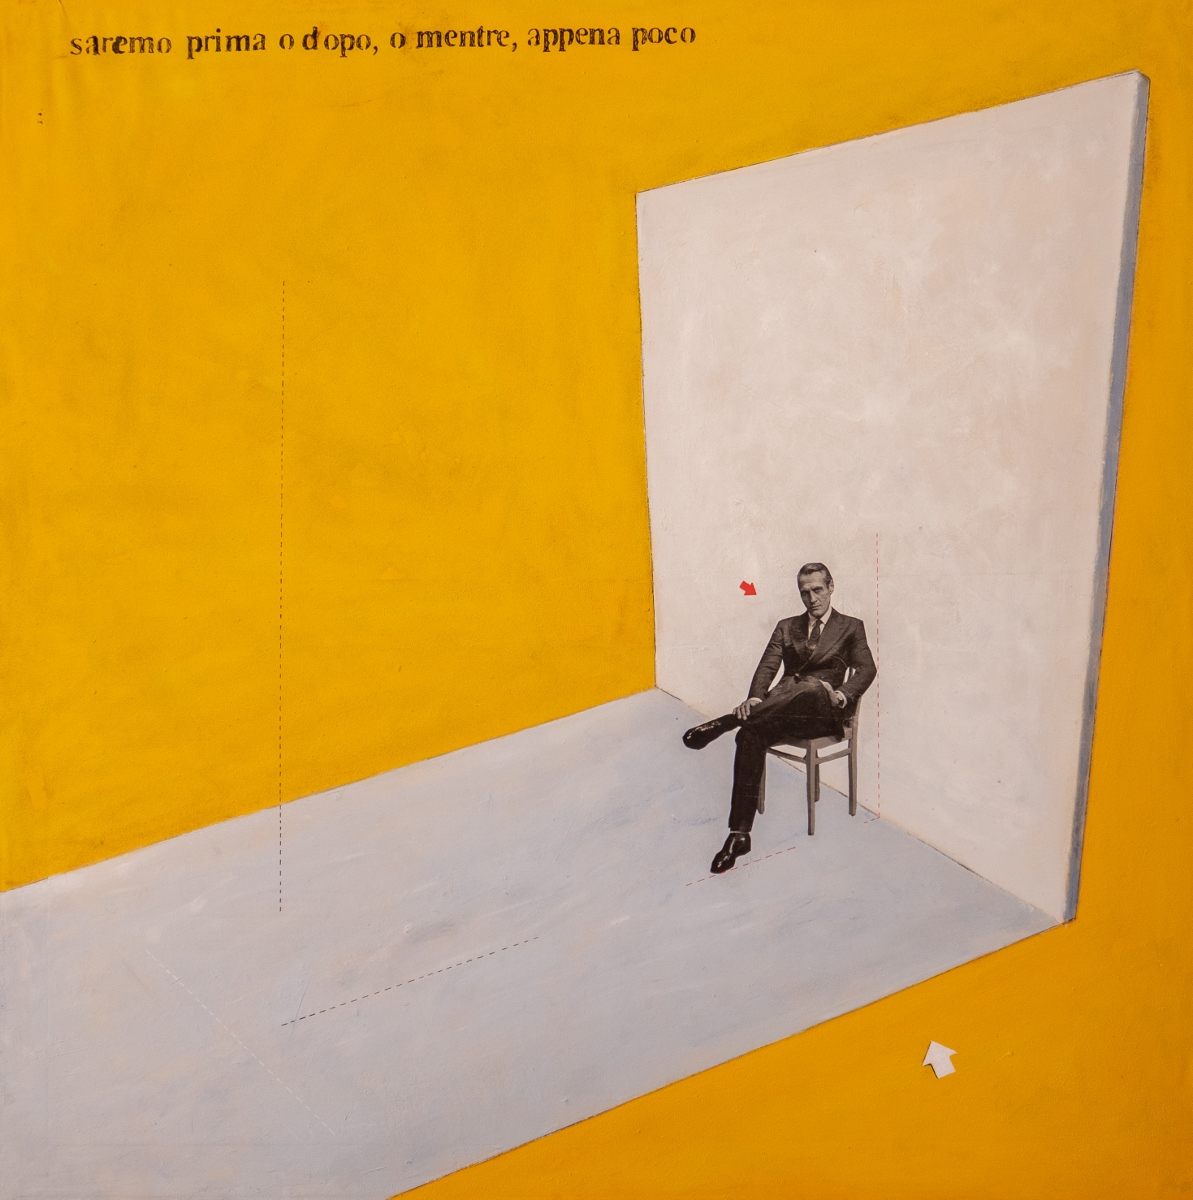 Alessandro Morino – Private rooms